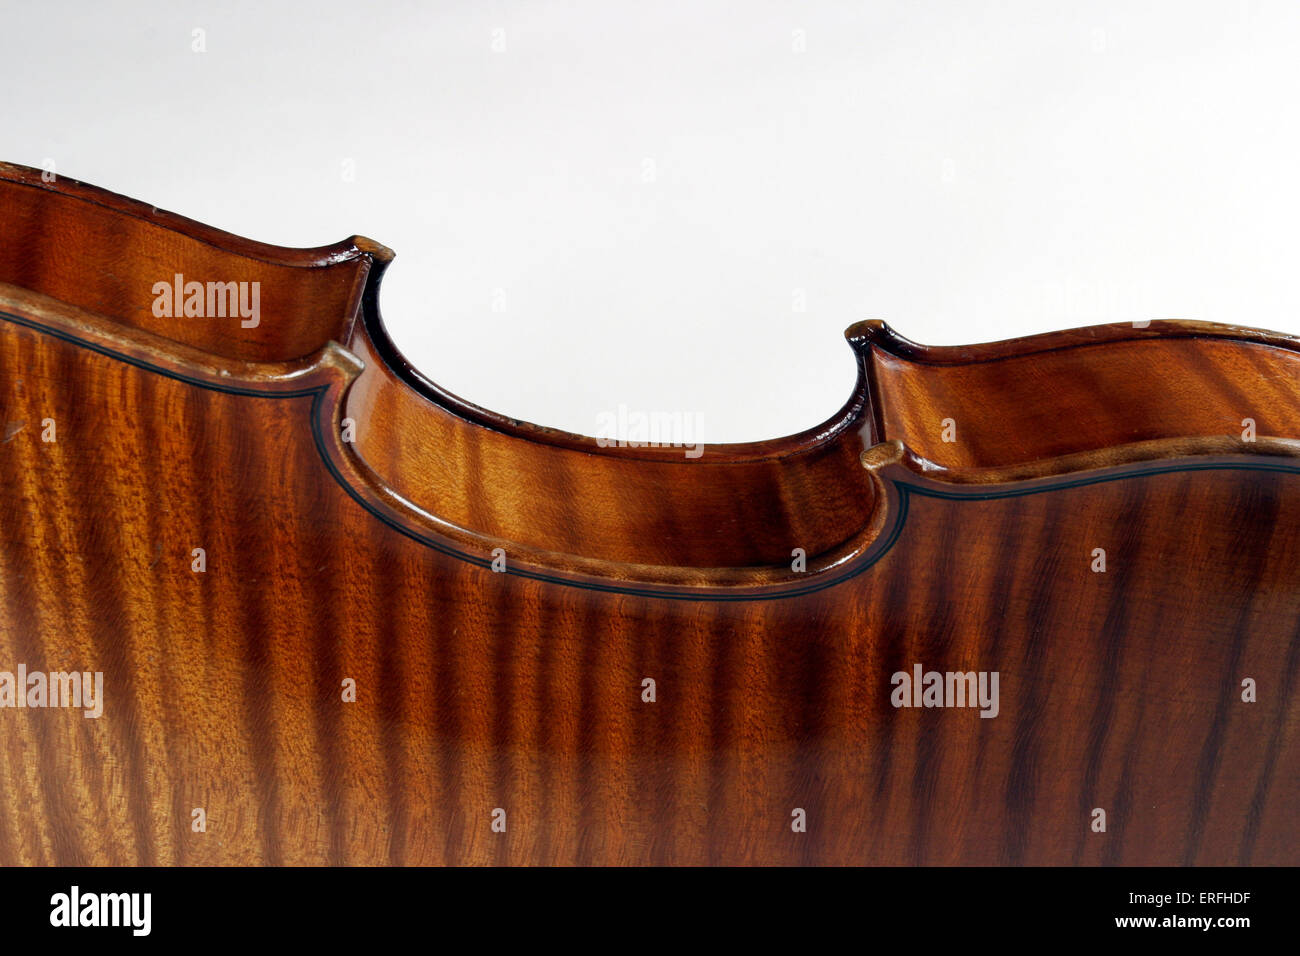 Violon - close up de côté d'un violon d'Collin-Mezin J B Charles. C C-M : luthier français, 1841-1923. Banque D'Images